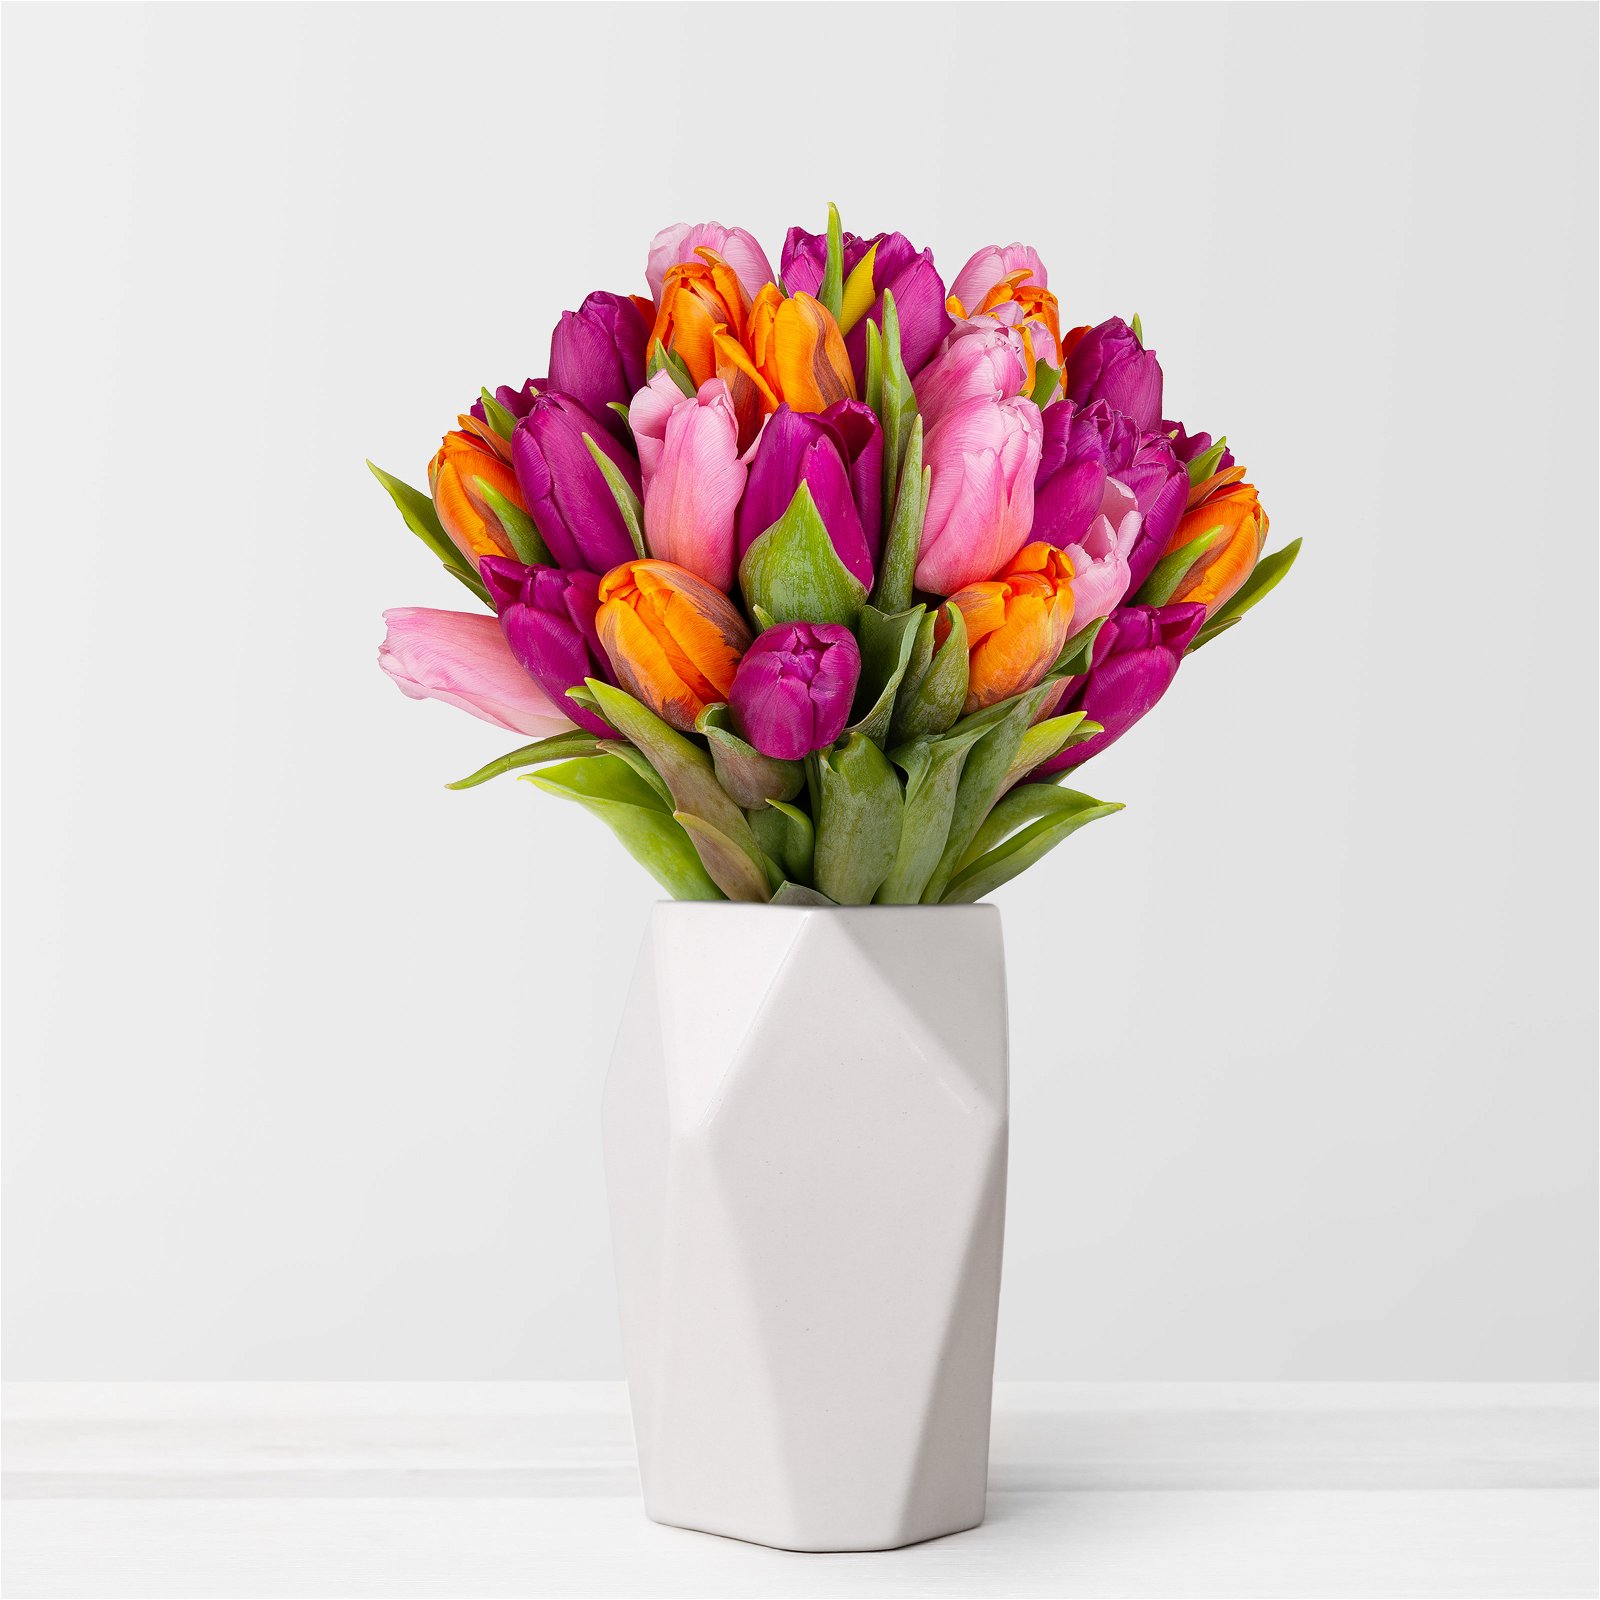 Blumenbund mit Tulpen, 30er-Bund, lila-pink-orange, inkl. gratis Grußkarte